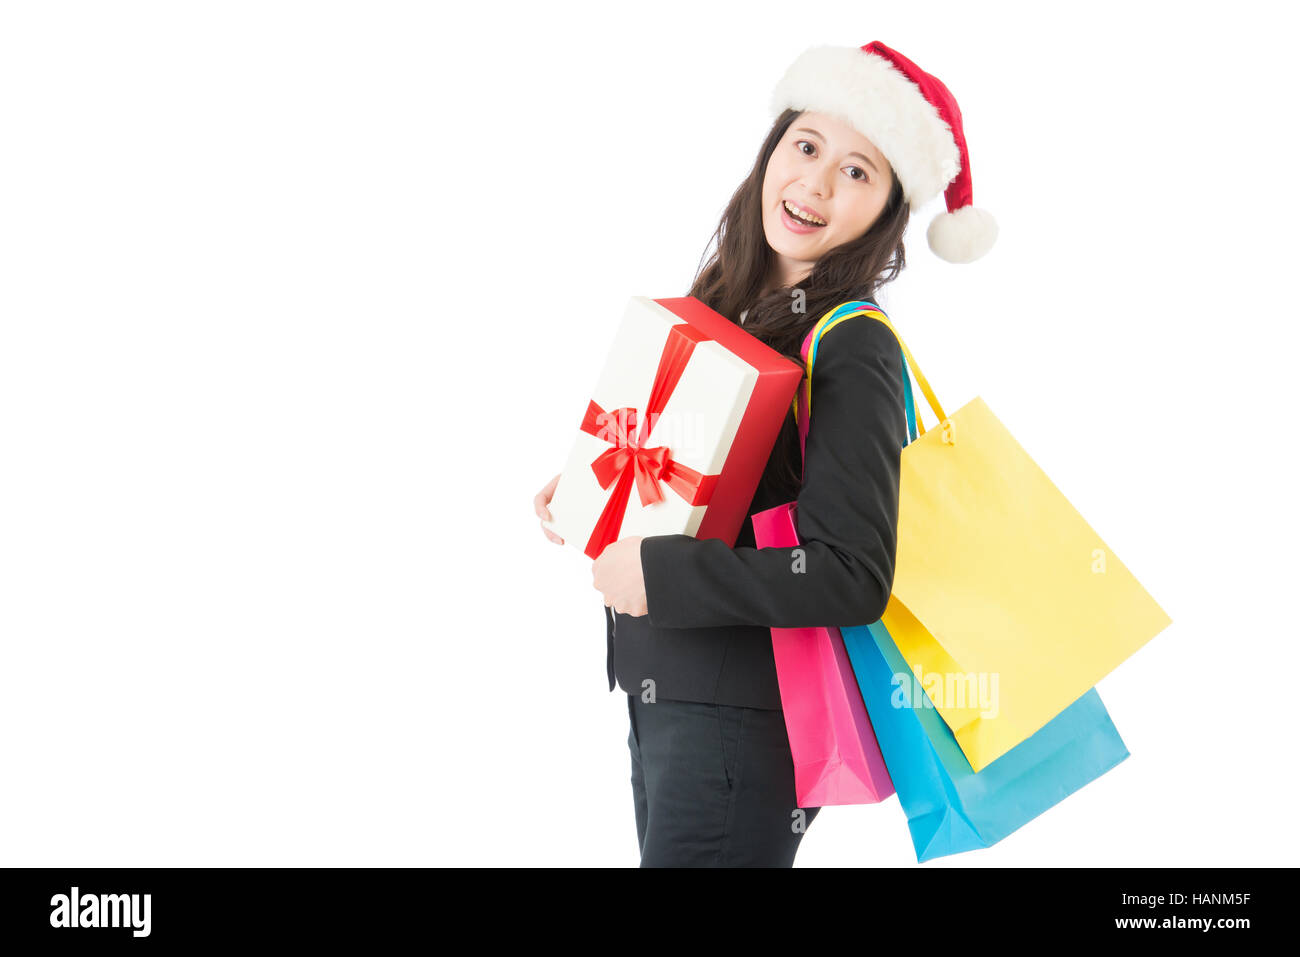 Weihnachts-shopping schön fröhliches Mädchen mit Einkaufstüten und Geschenk-Box. Weihnachtsgeschäft Konzept isoliert auf weißem Hintergrund Stockfoto